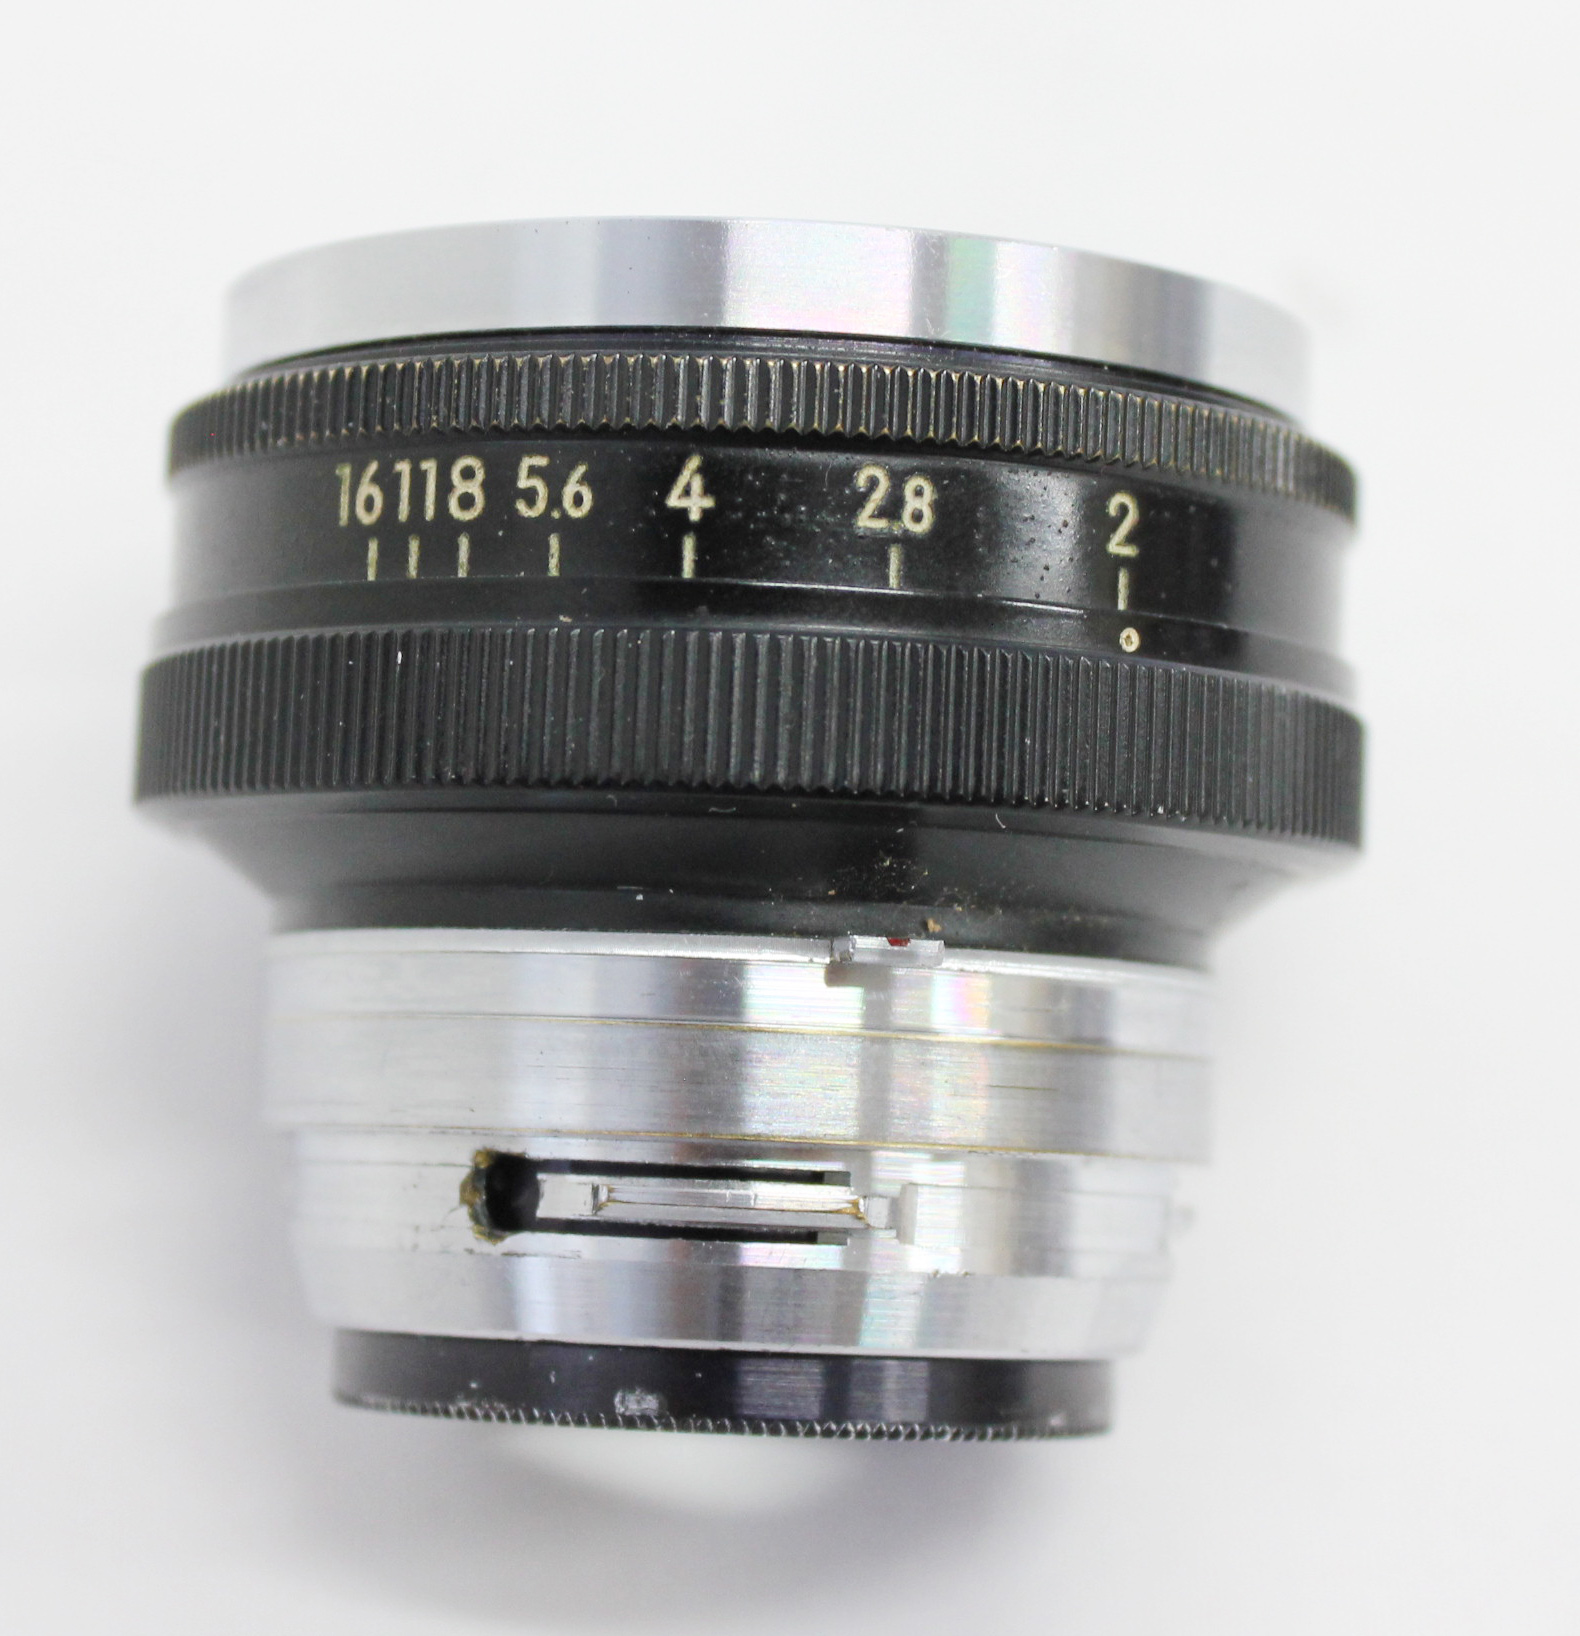 Nikon S3 35mm Rangefinder Camera w/ Nikkor-H 5cm 50mm F/2 Lens from Japan Photo 12